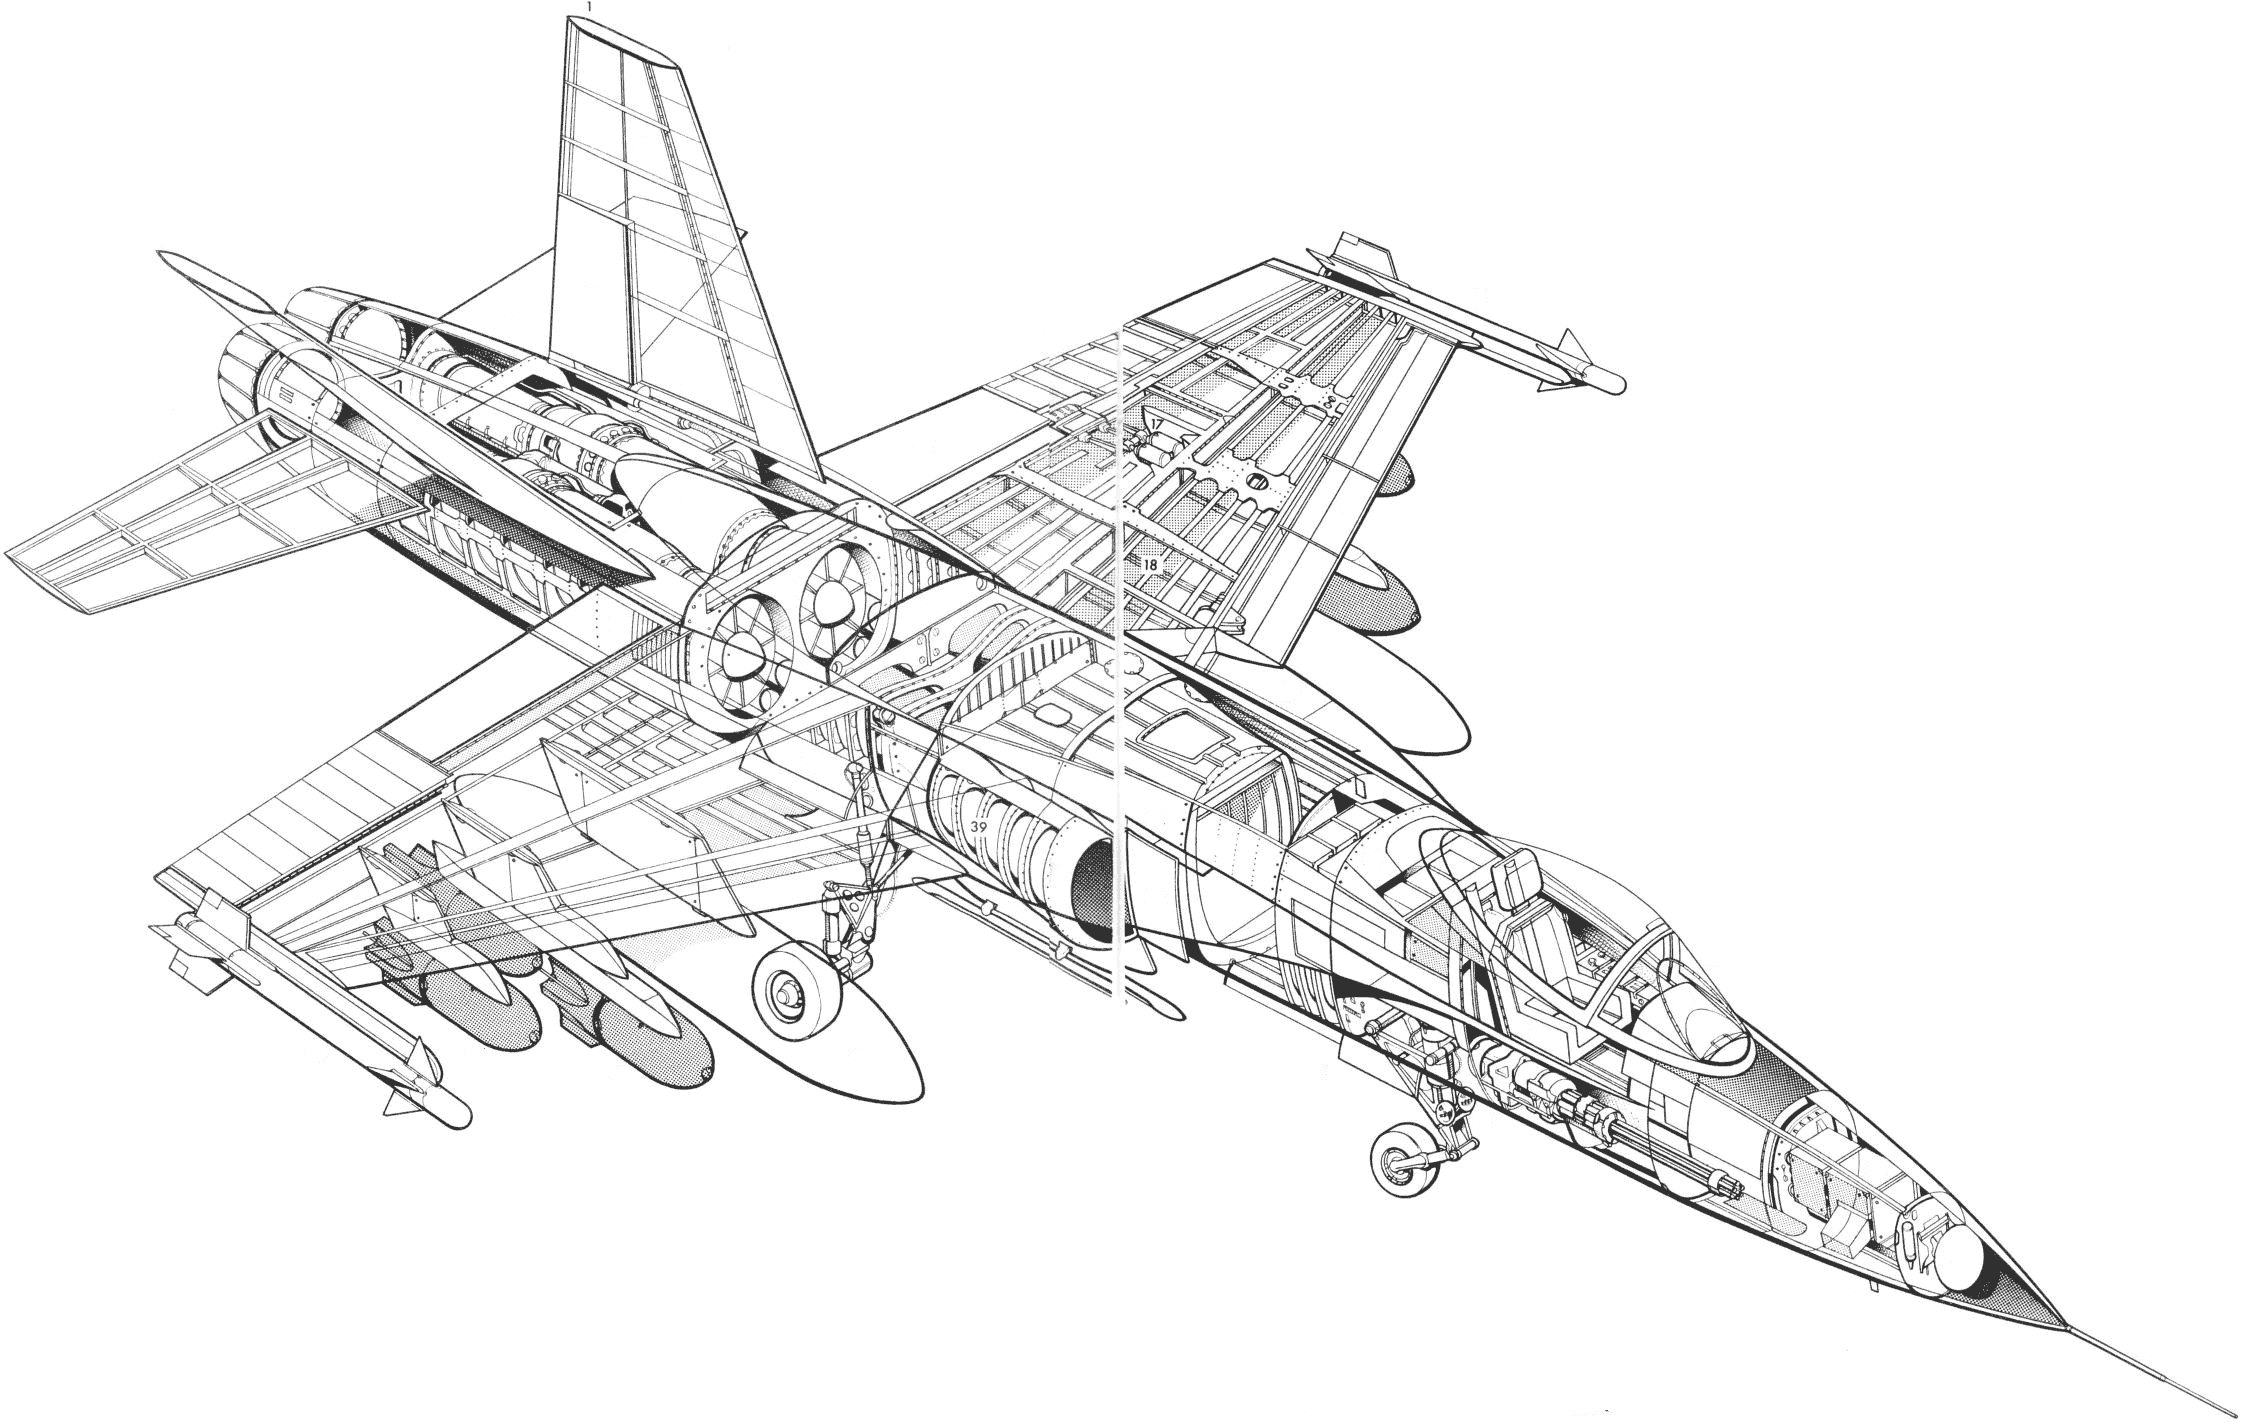 Northrop YF-17 Cobra cutaway drawing